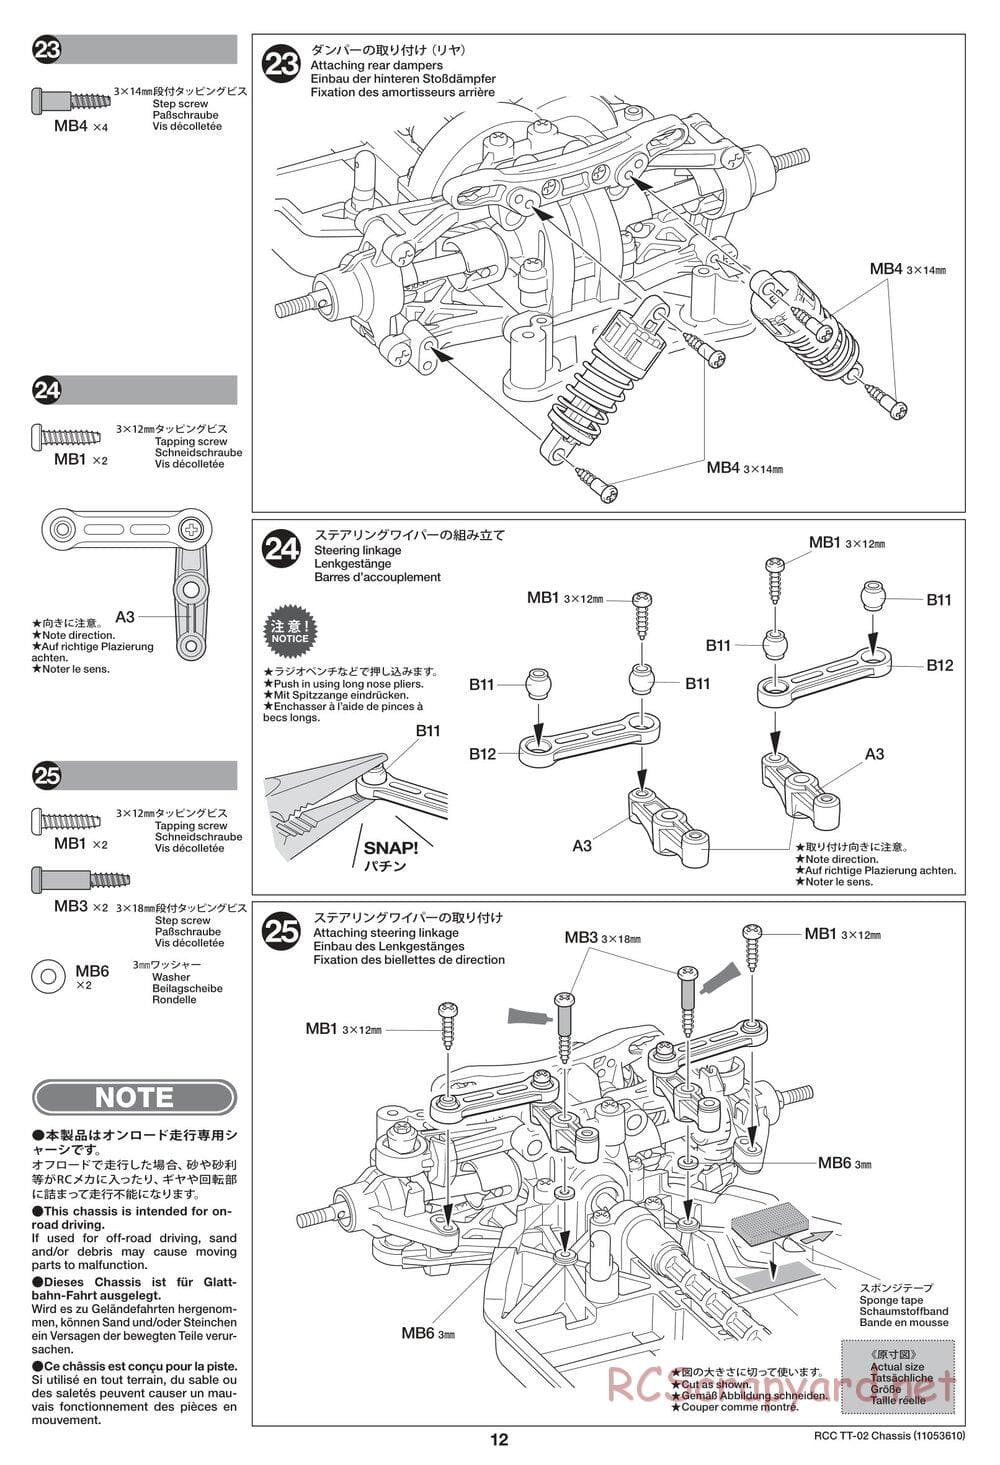 Tamiya - TT-02 Chassis - Manual - Page 12